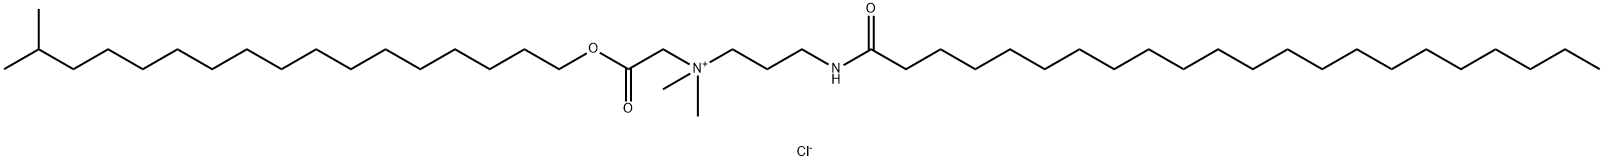 185022-44-0 异硬脂醇山嵛酰胺丙基甜菜碱酯氯化物